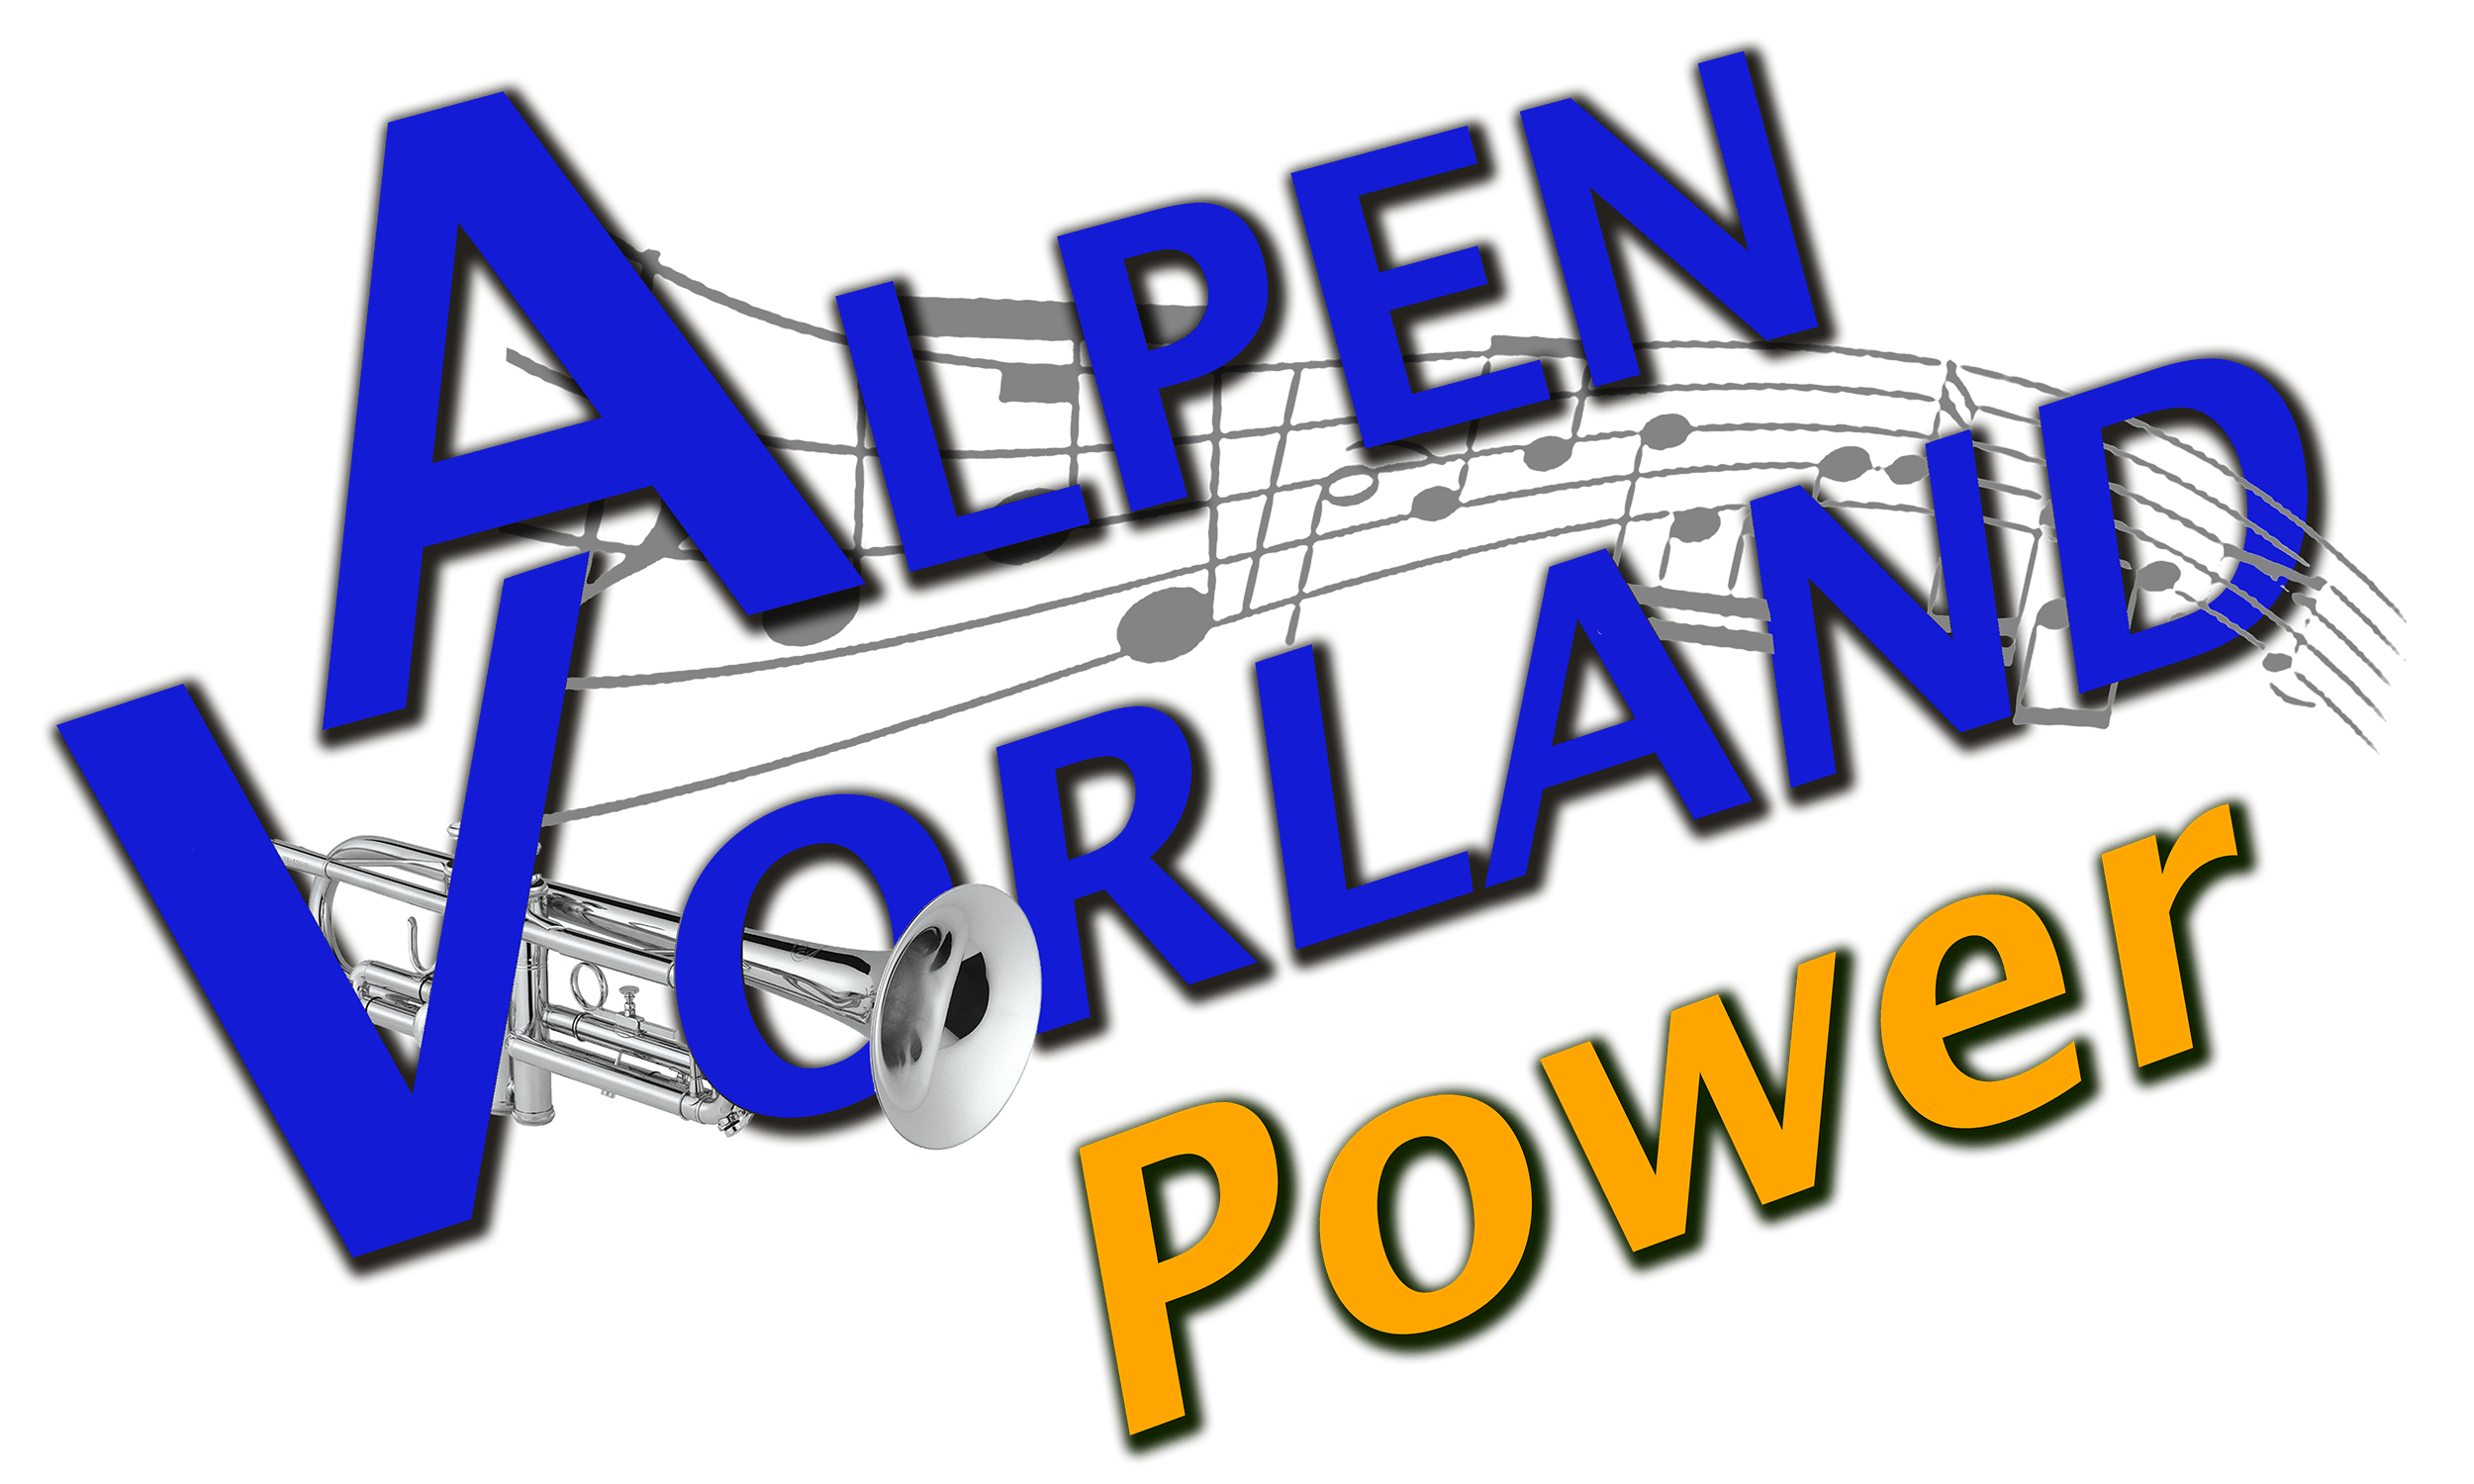 AlpenvorlandPower